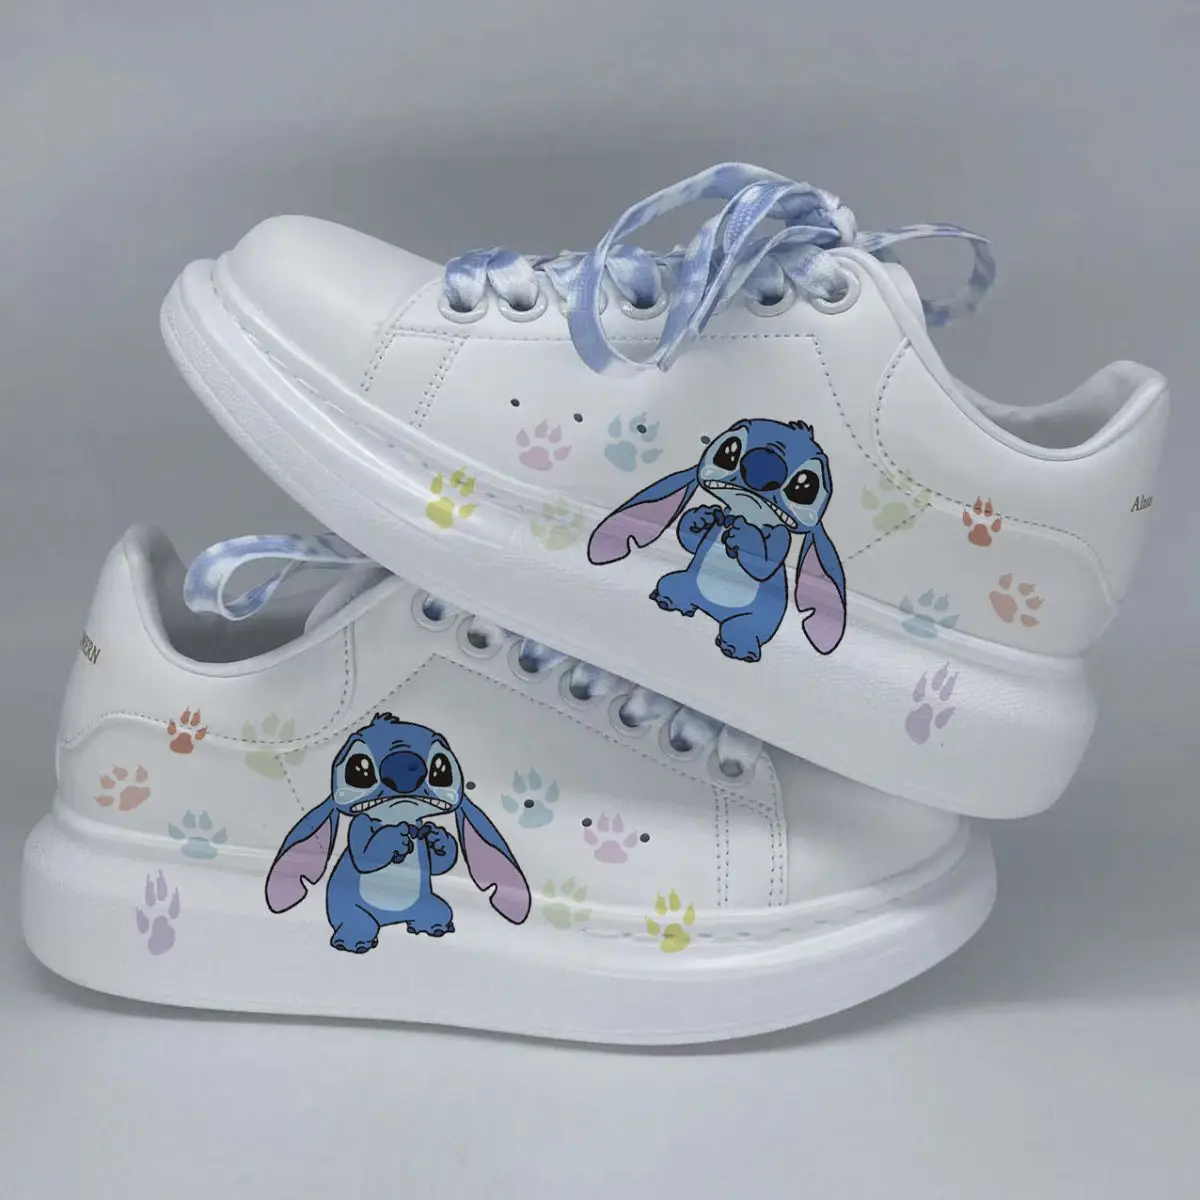 Disney lilo & stitch sapatos de lona bonito dos desenhos animados pouco  monstro padrão sapatos moda esportes casuais sapatos de lona alta e baixa -  AliExpress